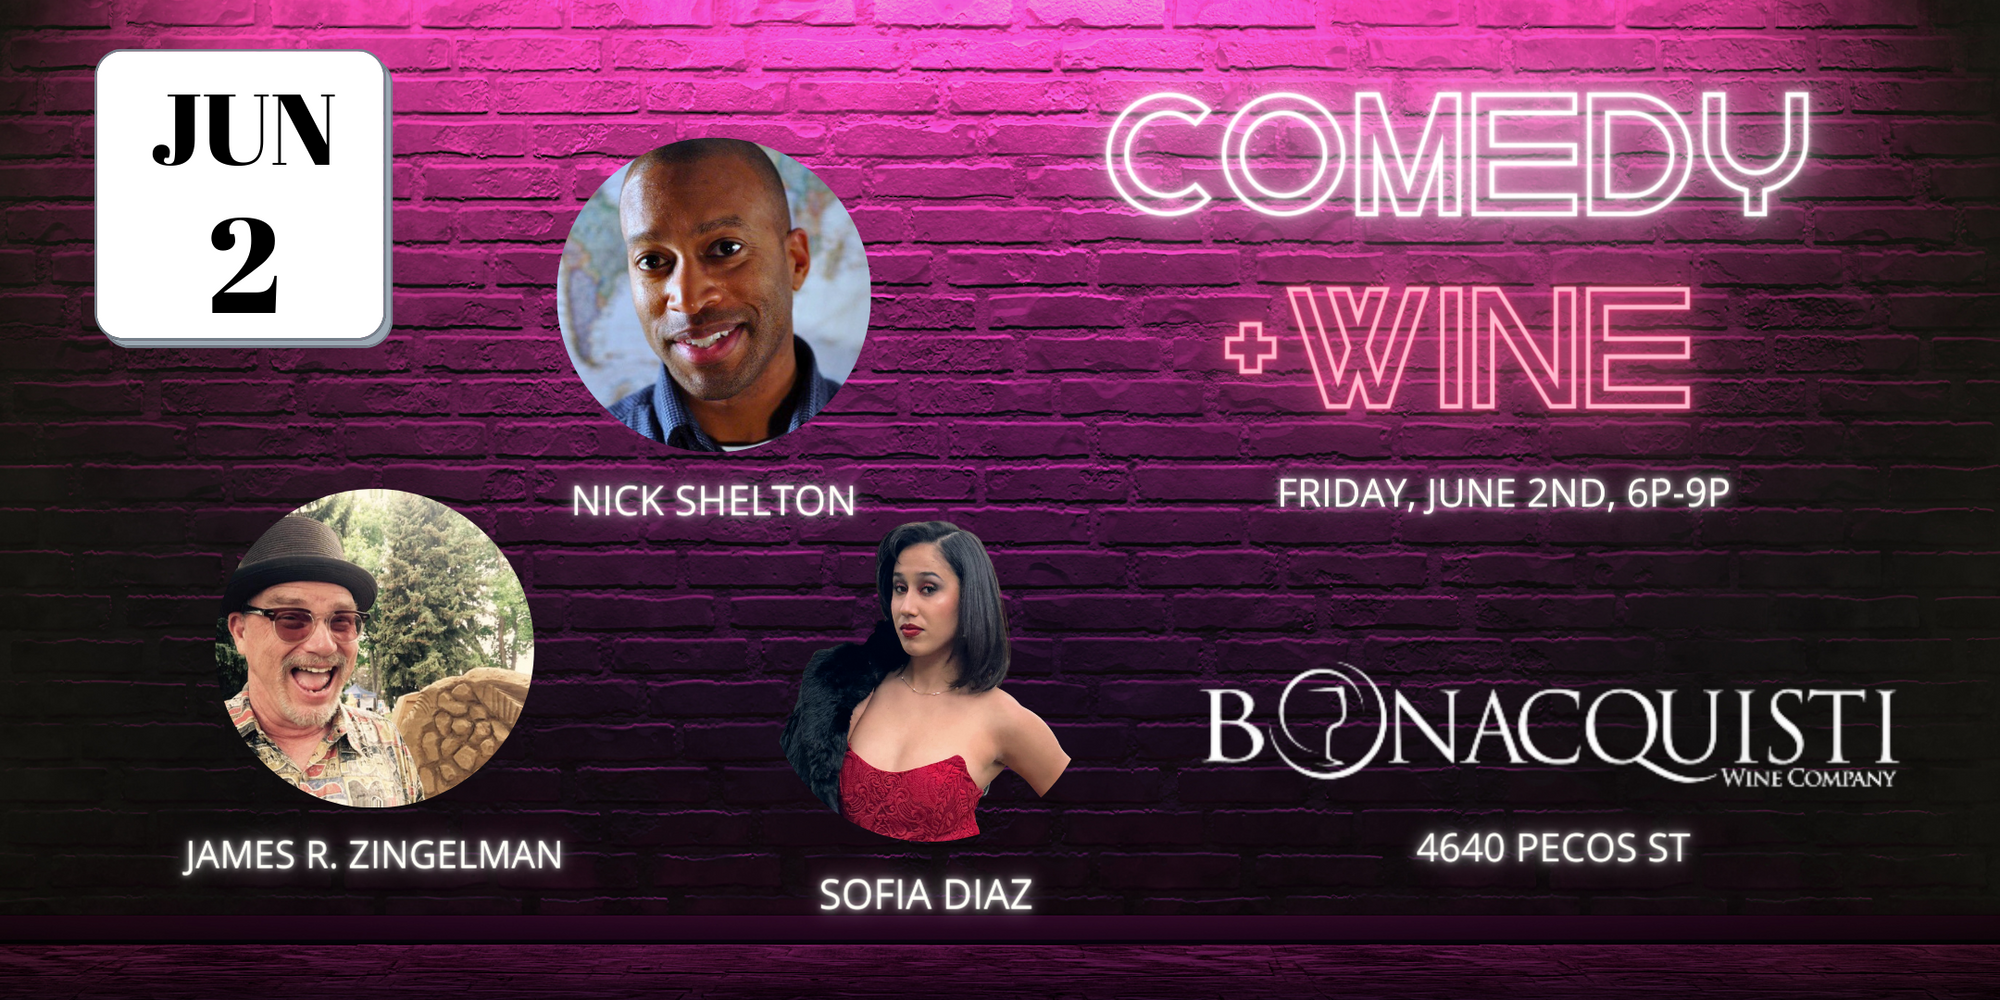 Comedy plus Wine night Friday June 2nd at Bonacquisti wine Company